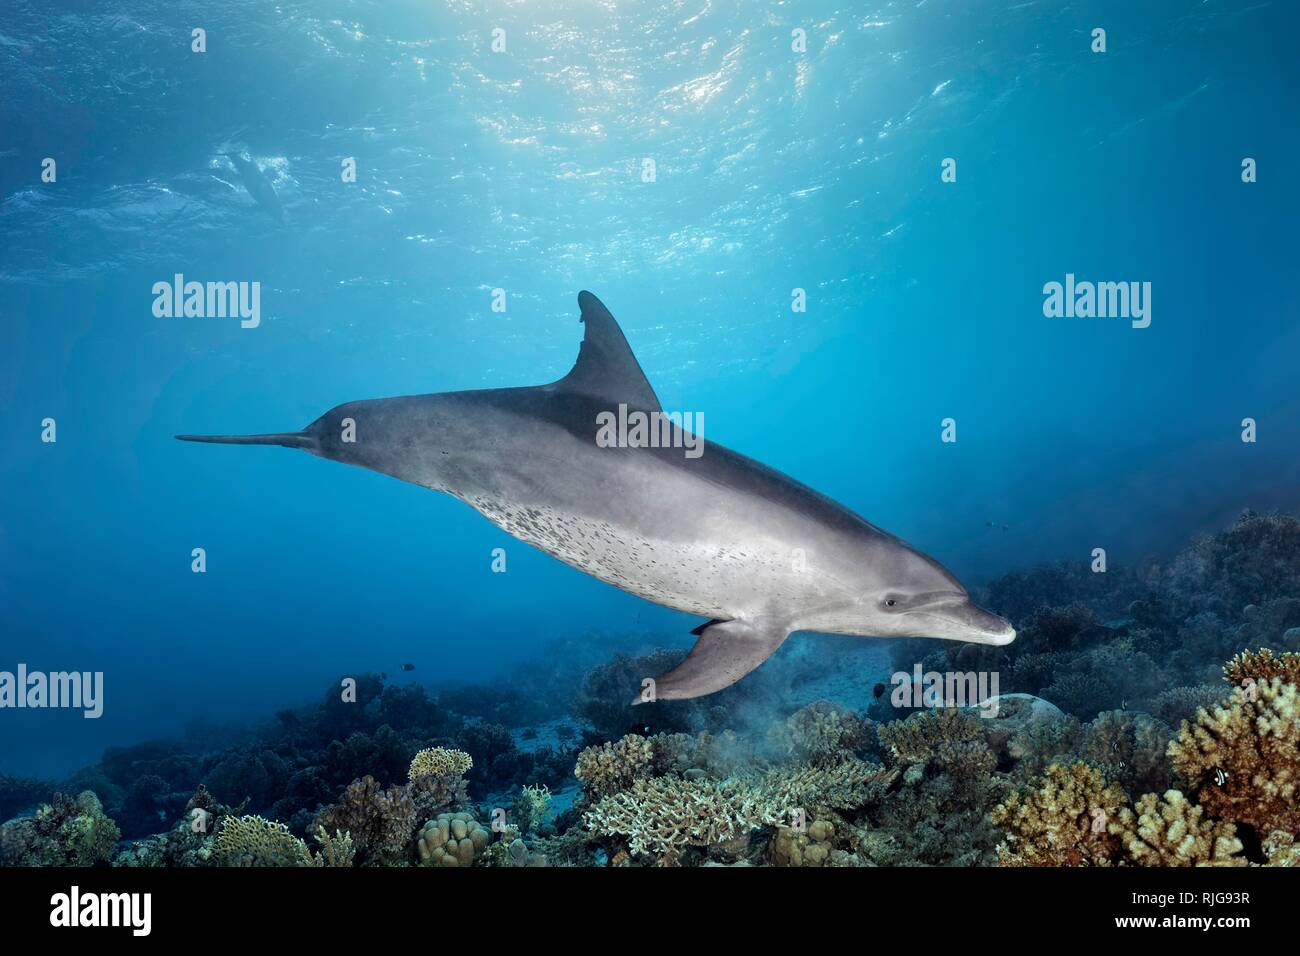 Il tursiope o delfino maggiore (Tursiops truncatus), femmina, nuota sotto la superficie dell'acqua nella luce del sole sulla barriera corallina, Mar Rosso, Egitto Foto Stock